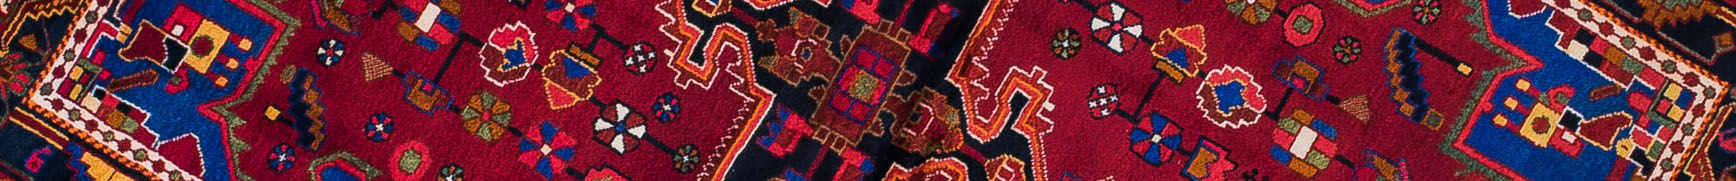 Nahavand Persian Carpet Rug N1Carpet Canada Montreal Tapis Persan 850